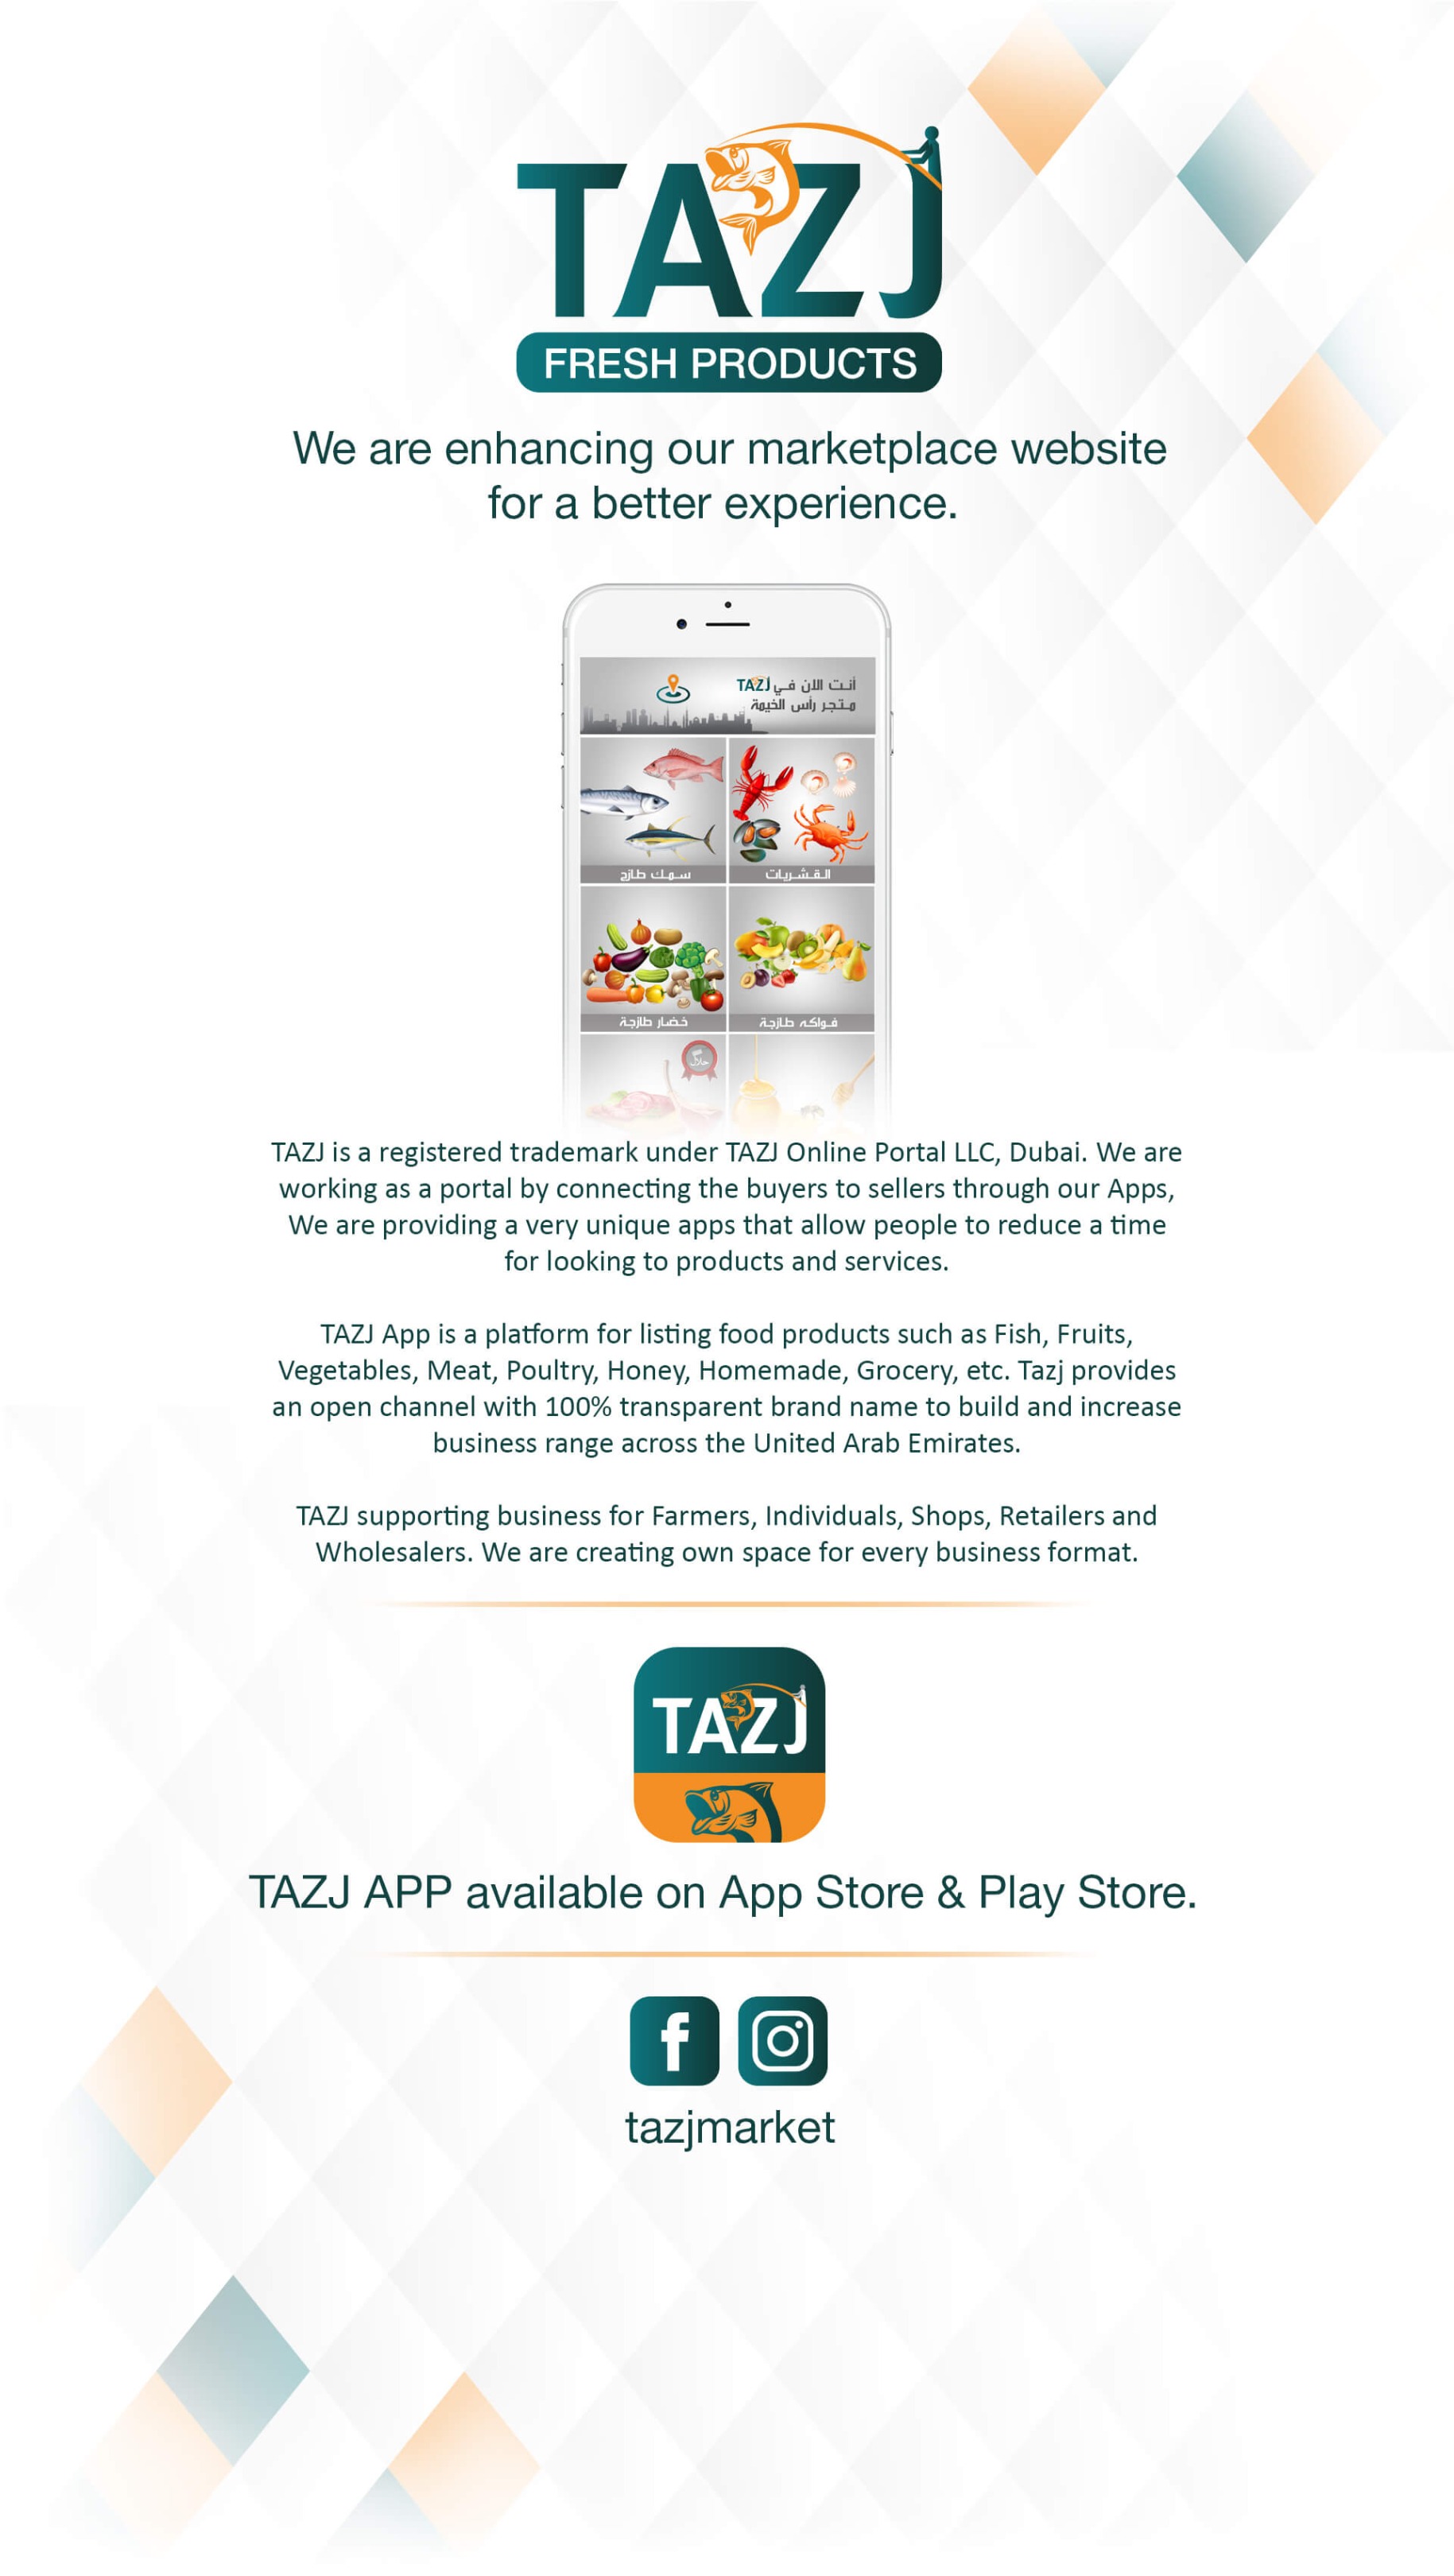 Tazj App